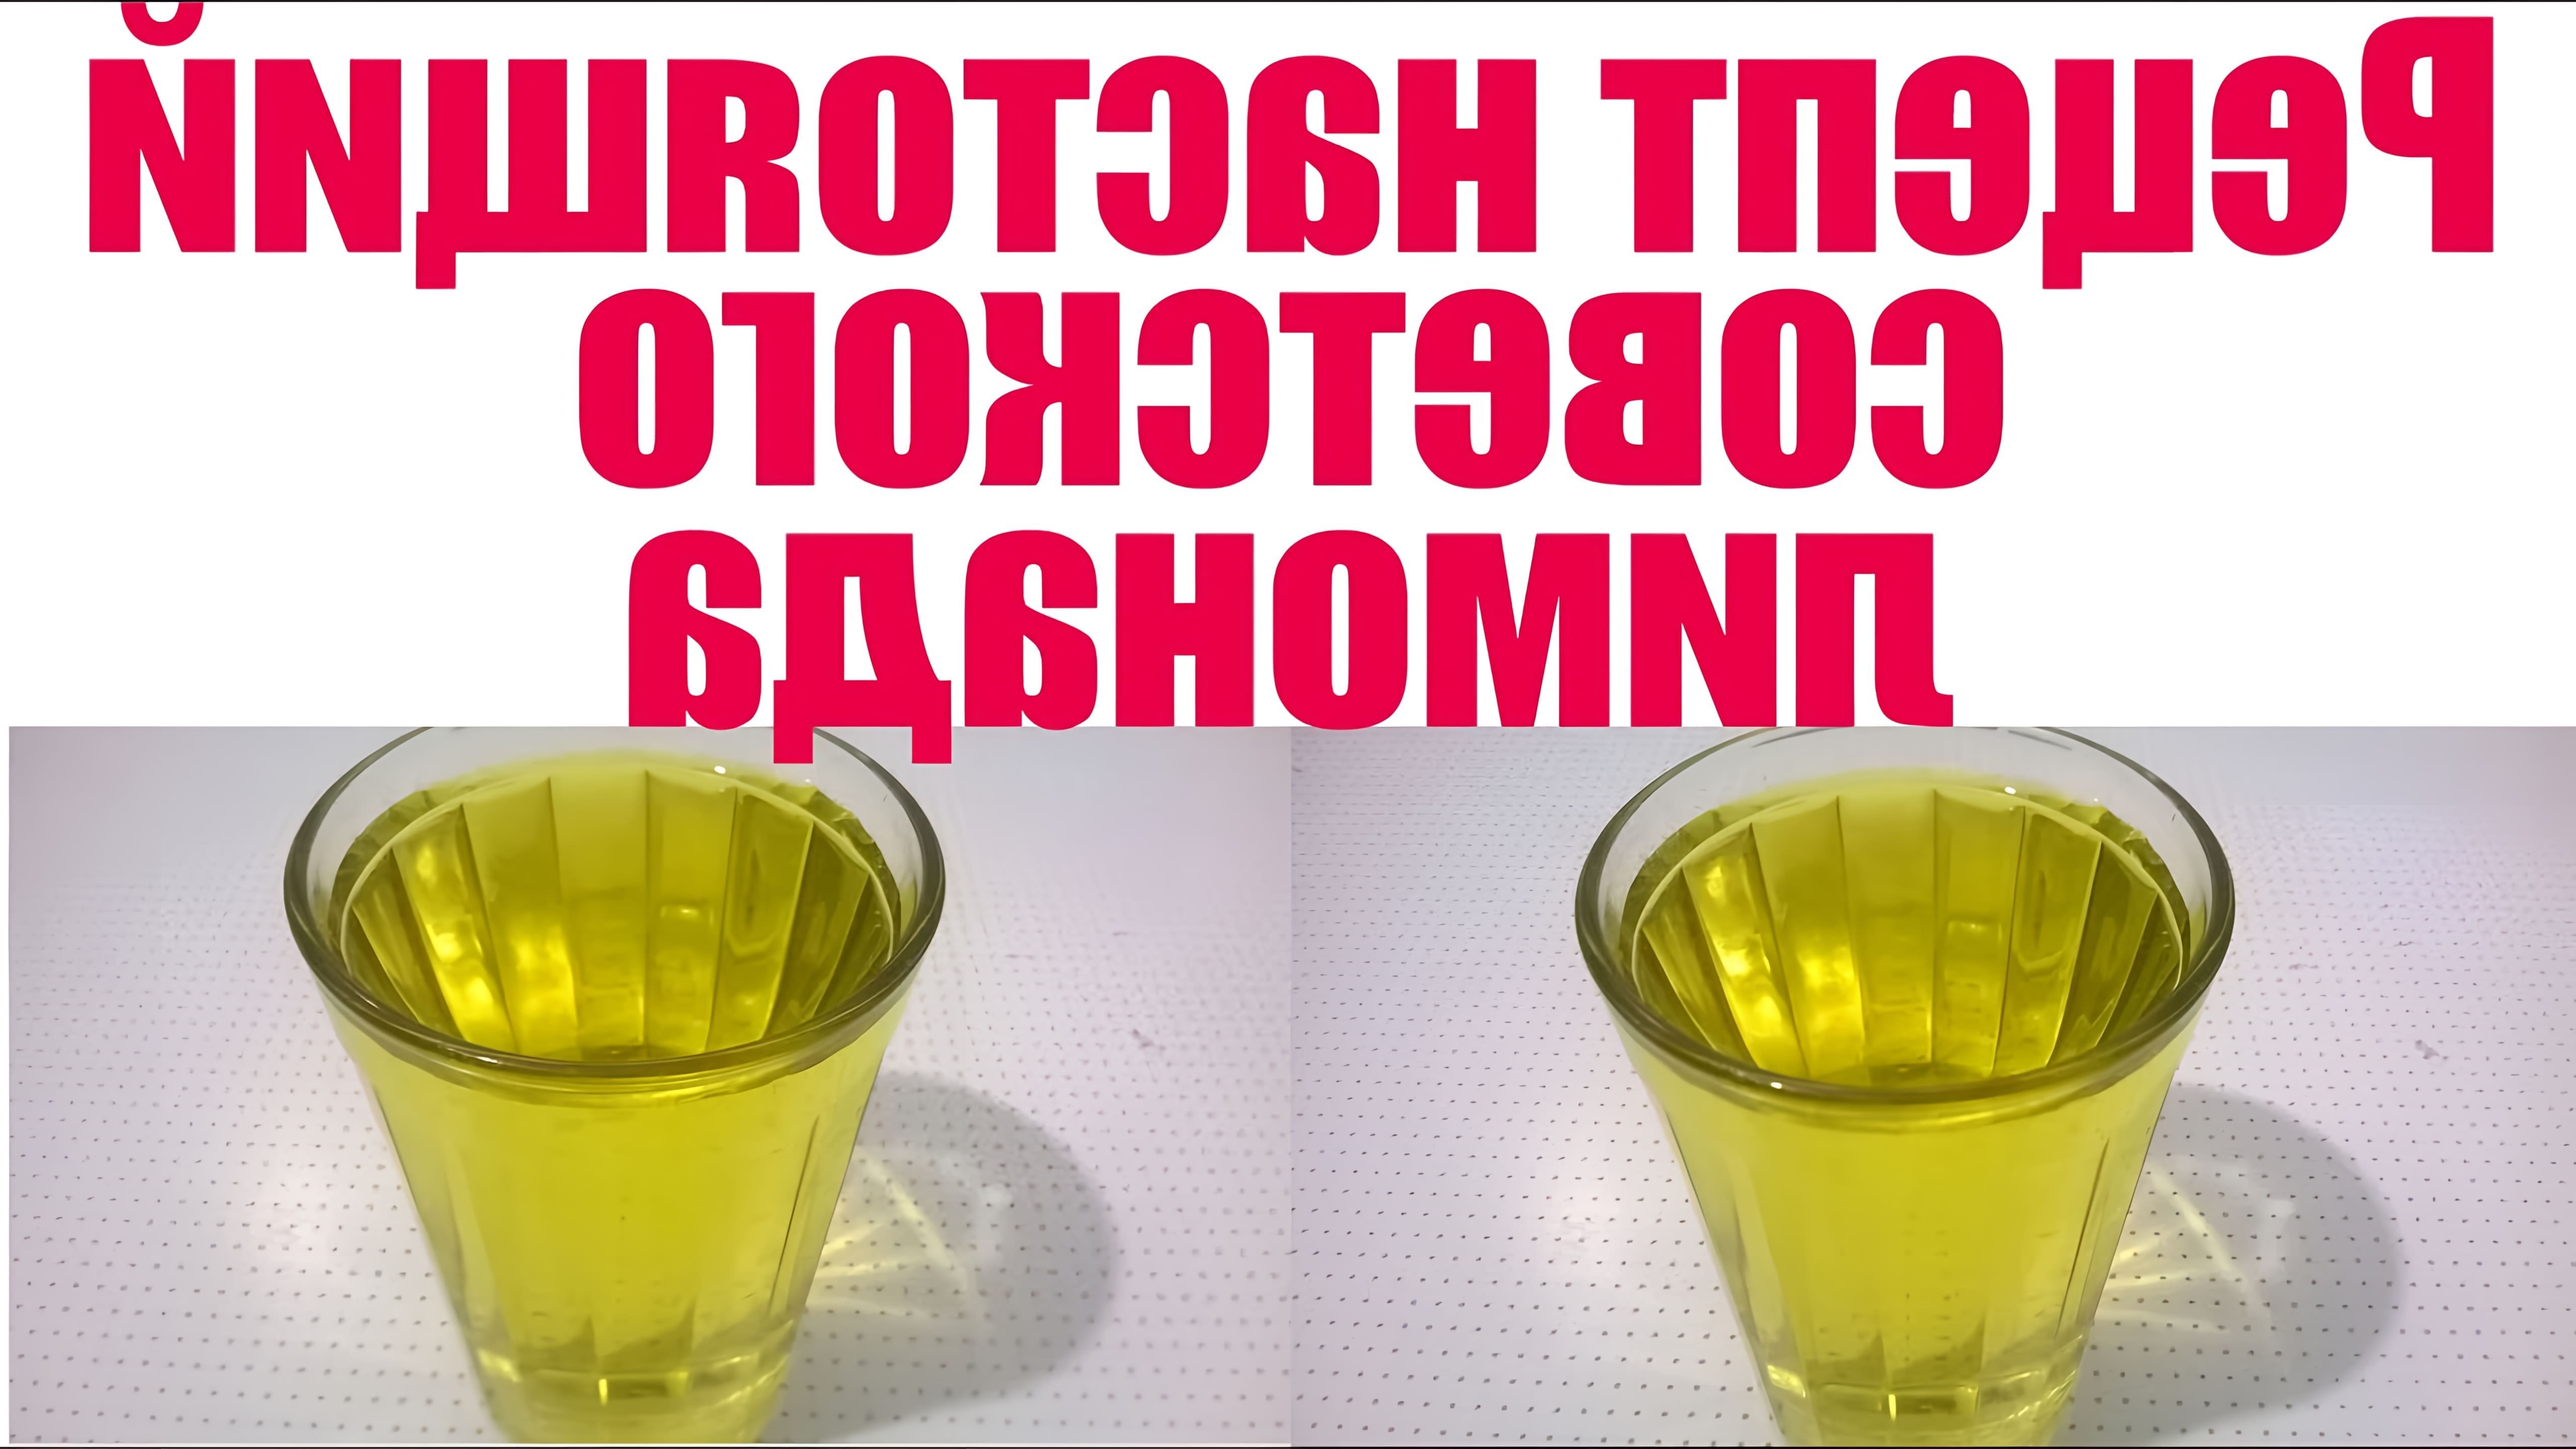 В этом видео демонстрируется рецепт домашнего лимонада, который напоминает вкус советского лимонада